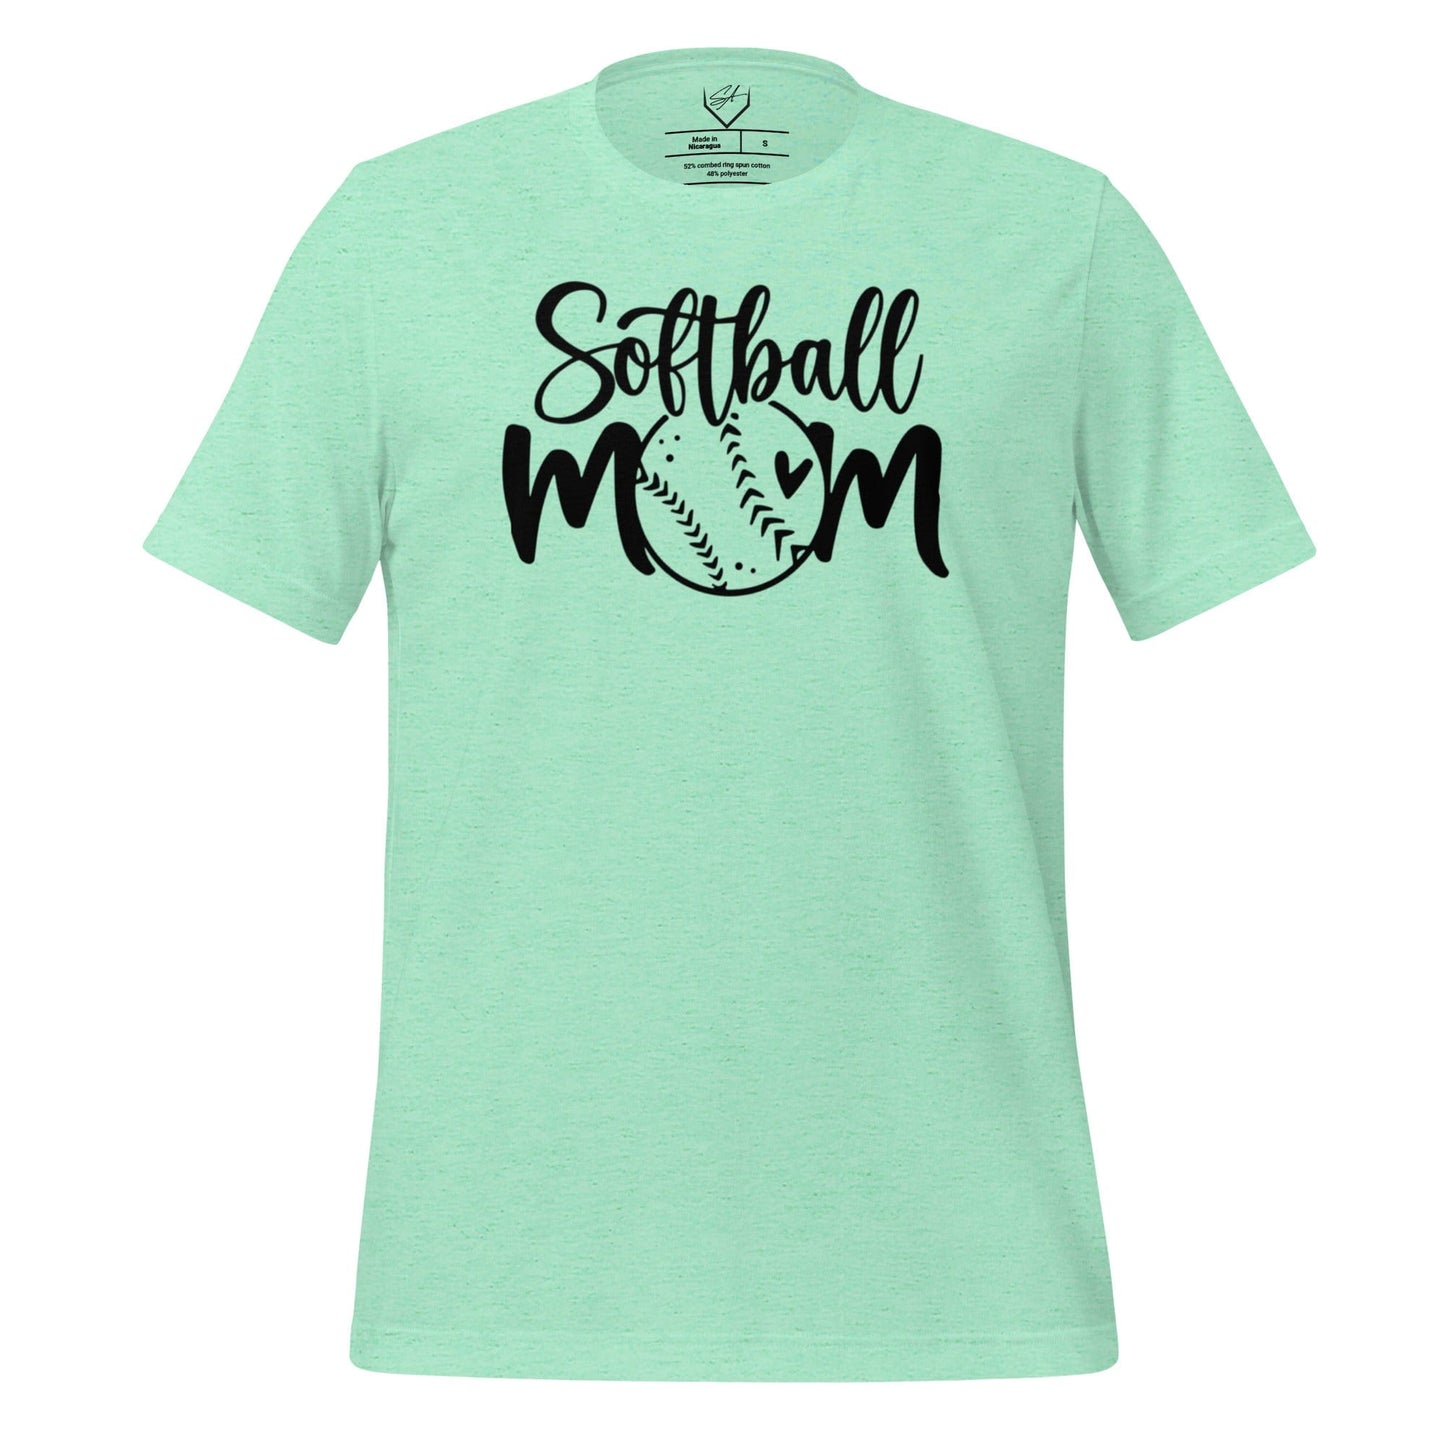 Softball Mom - Adult Tee